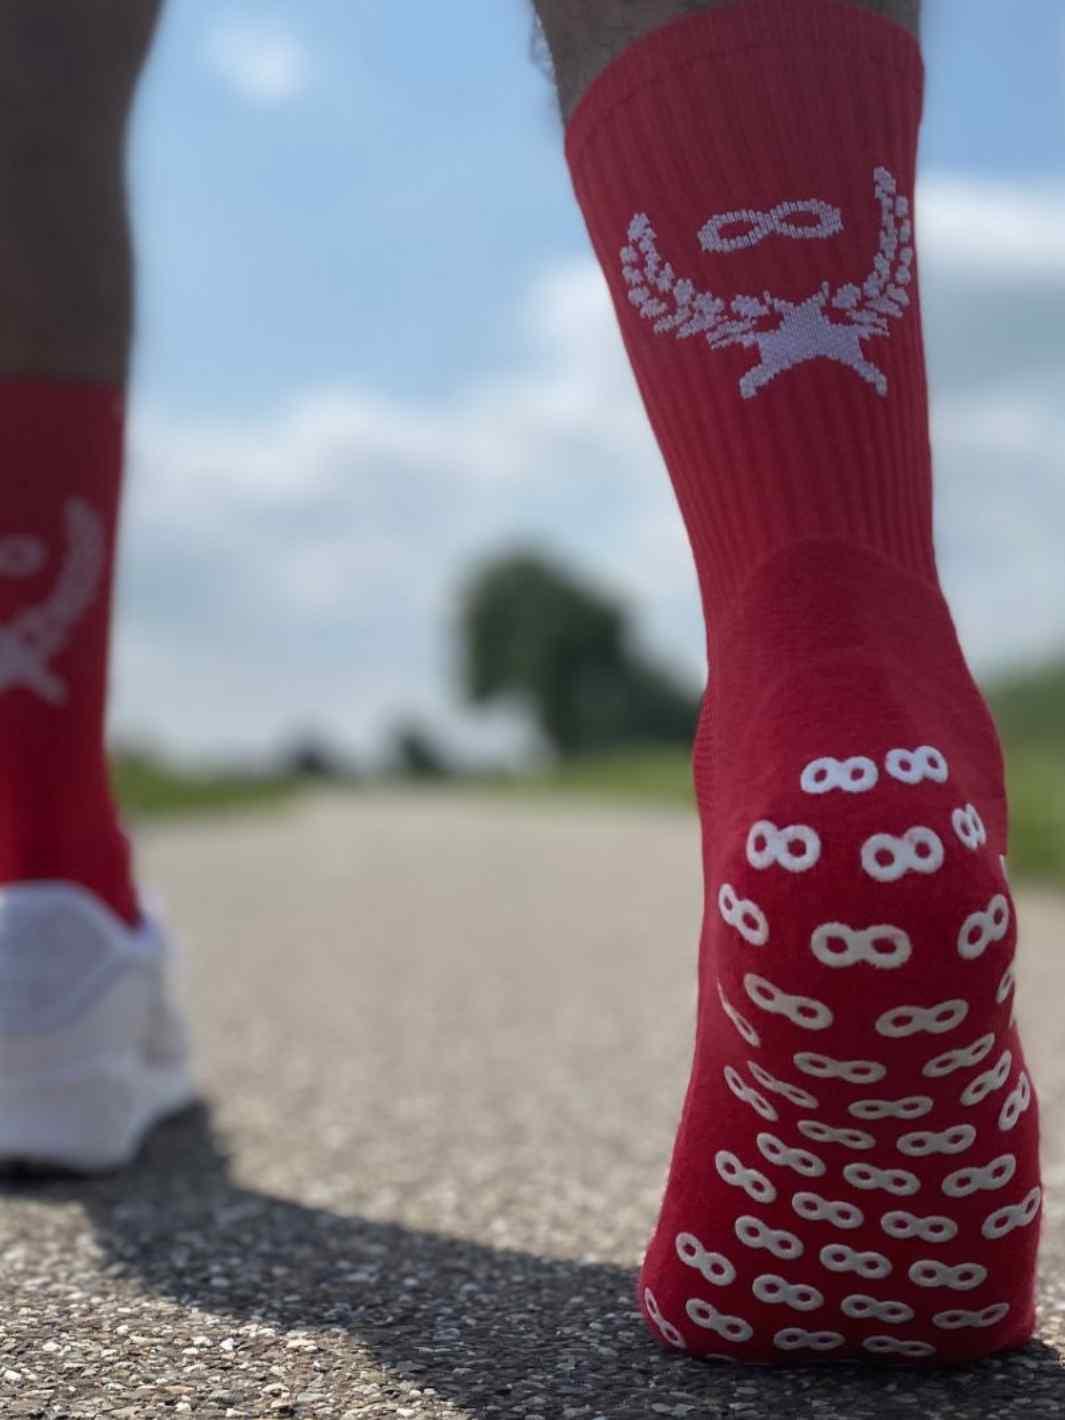 Anti Slip Gripper Soccer Socks - Non Slipping Athletic Grip Socks for  Football ball Running 